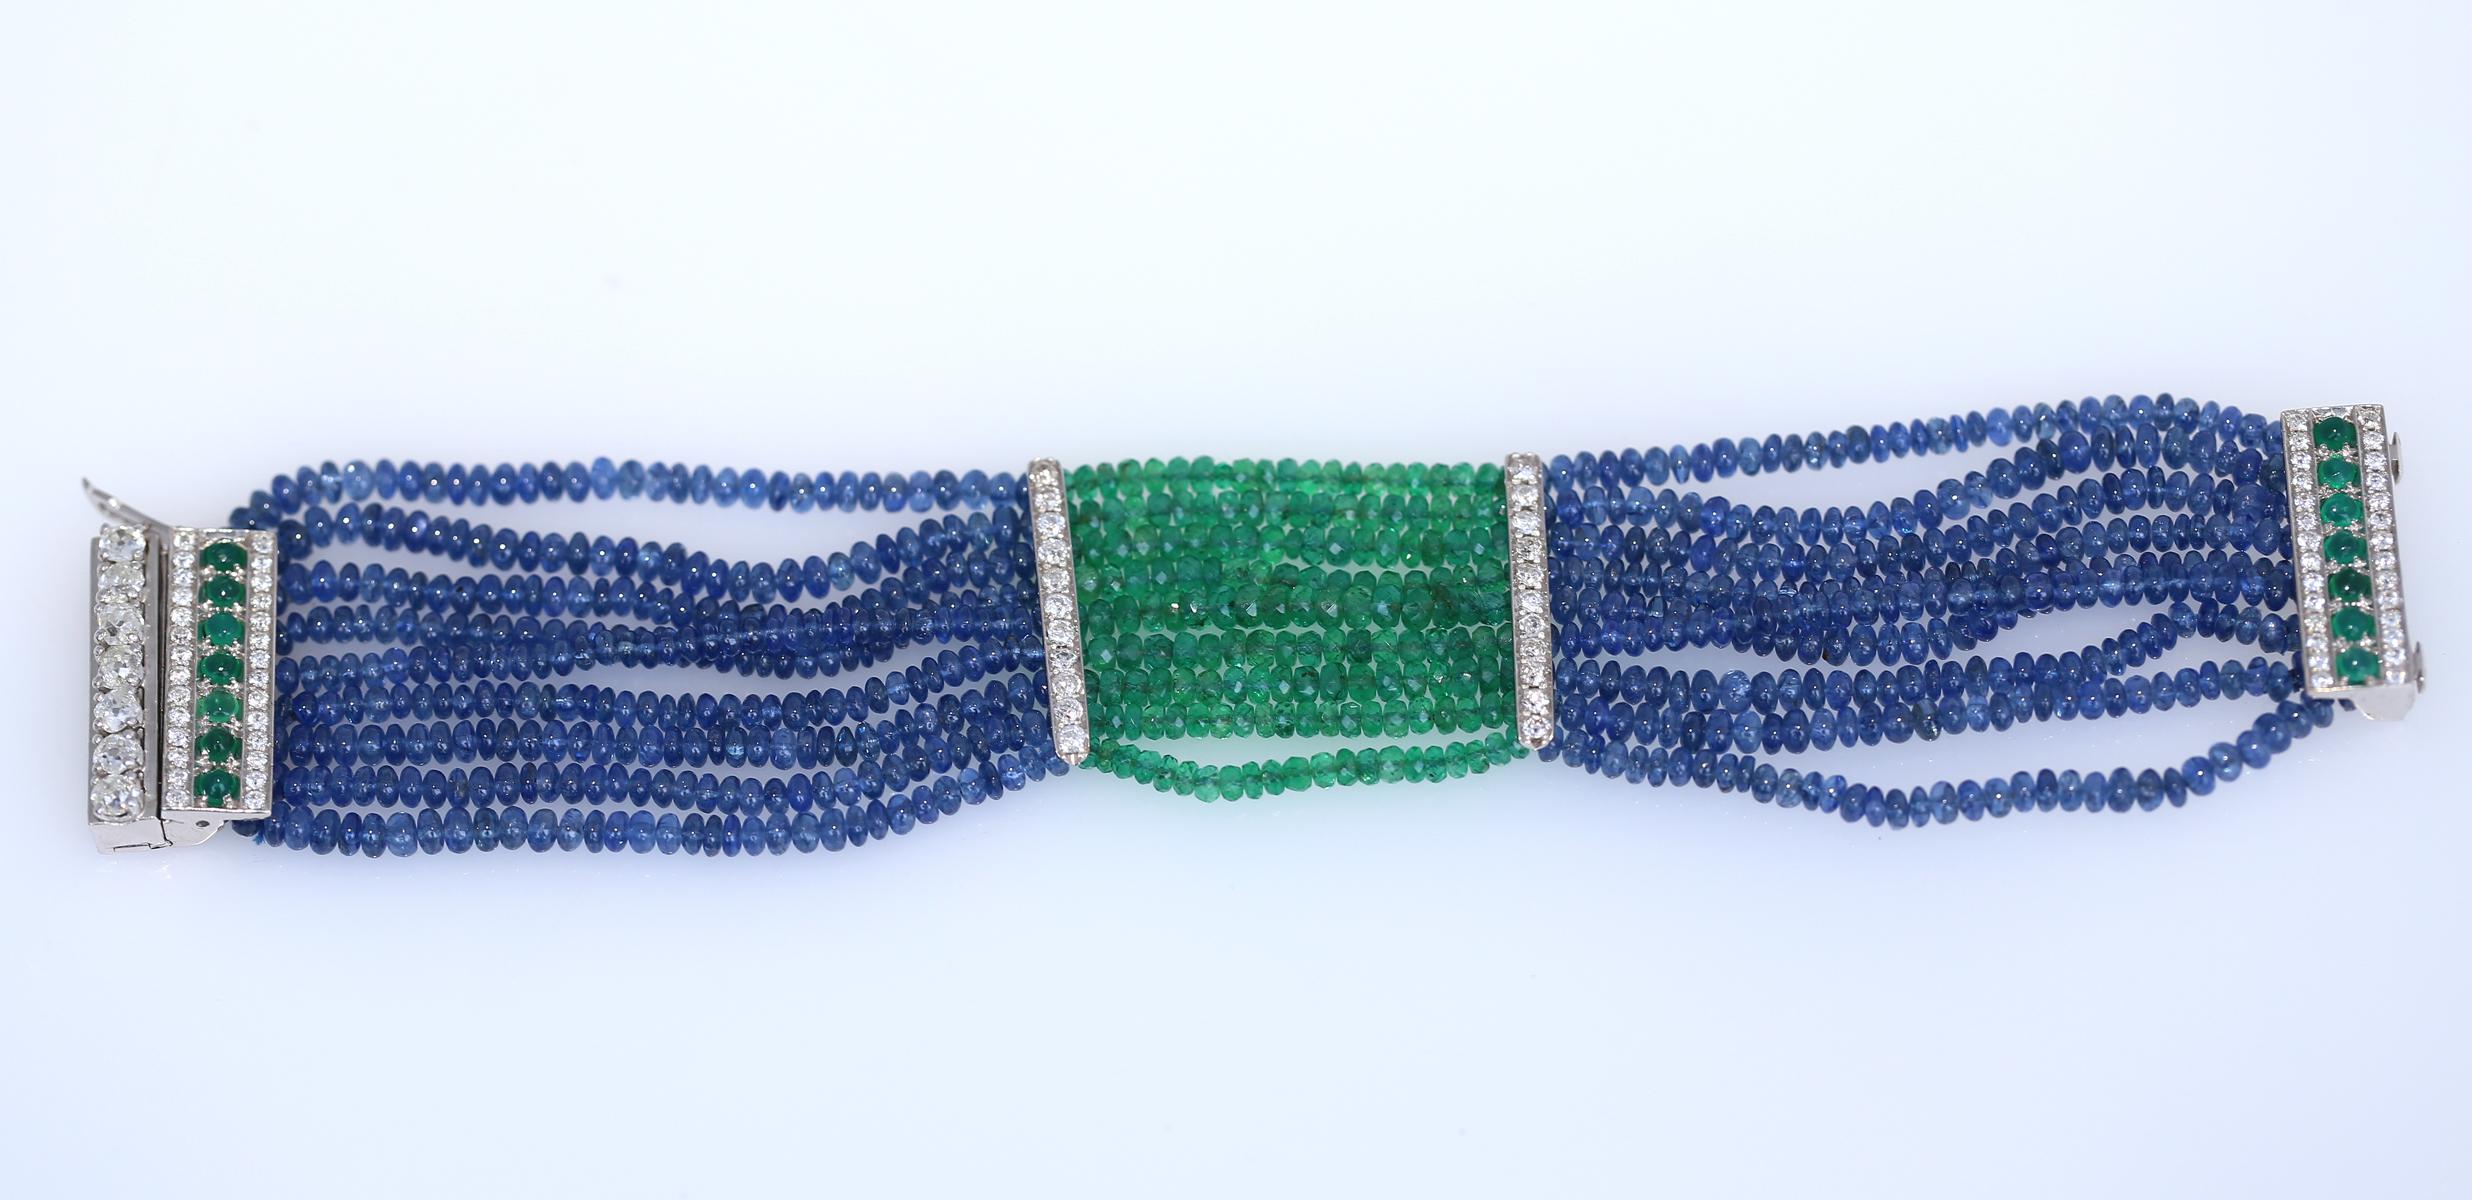 Bracelet d'émeraudes, de saphirs et de diamants. Créée dans les années 1970.
Un bracelet multi-brins en saphir et émeraude contenant. Fines émeraudes à facettes vertes. Perles de saphir. Une ligne de diamants fins de taille ronde et d'émeraudes